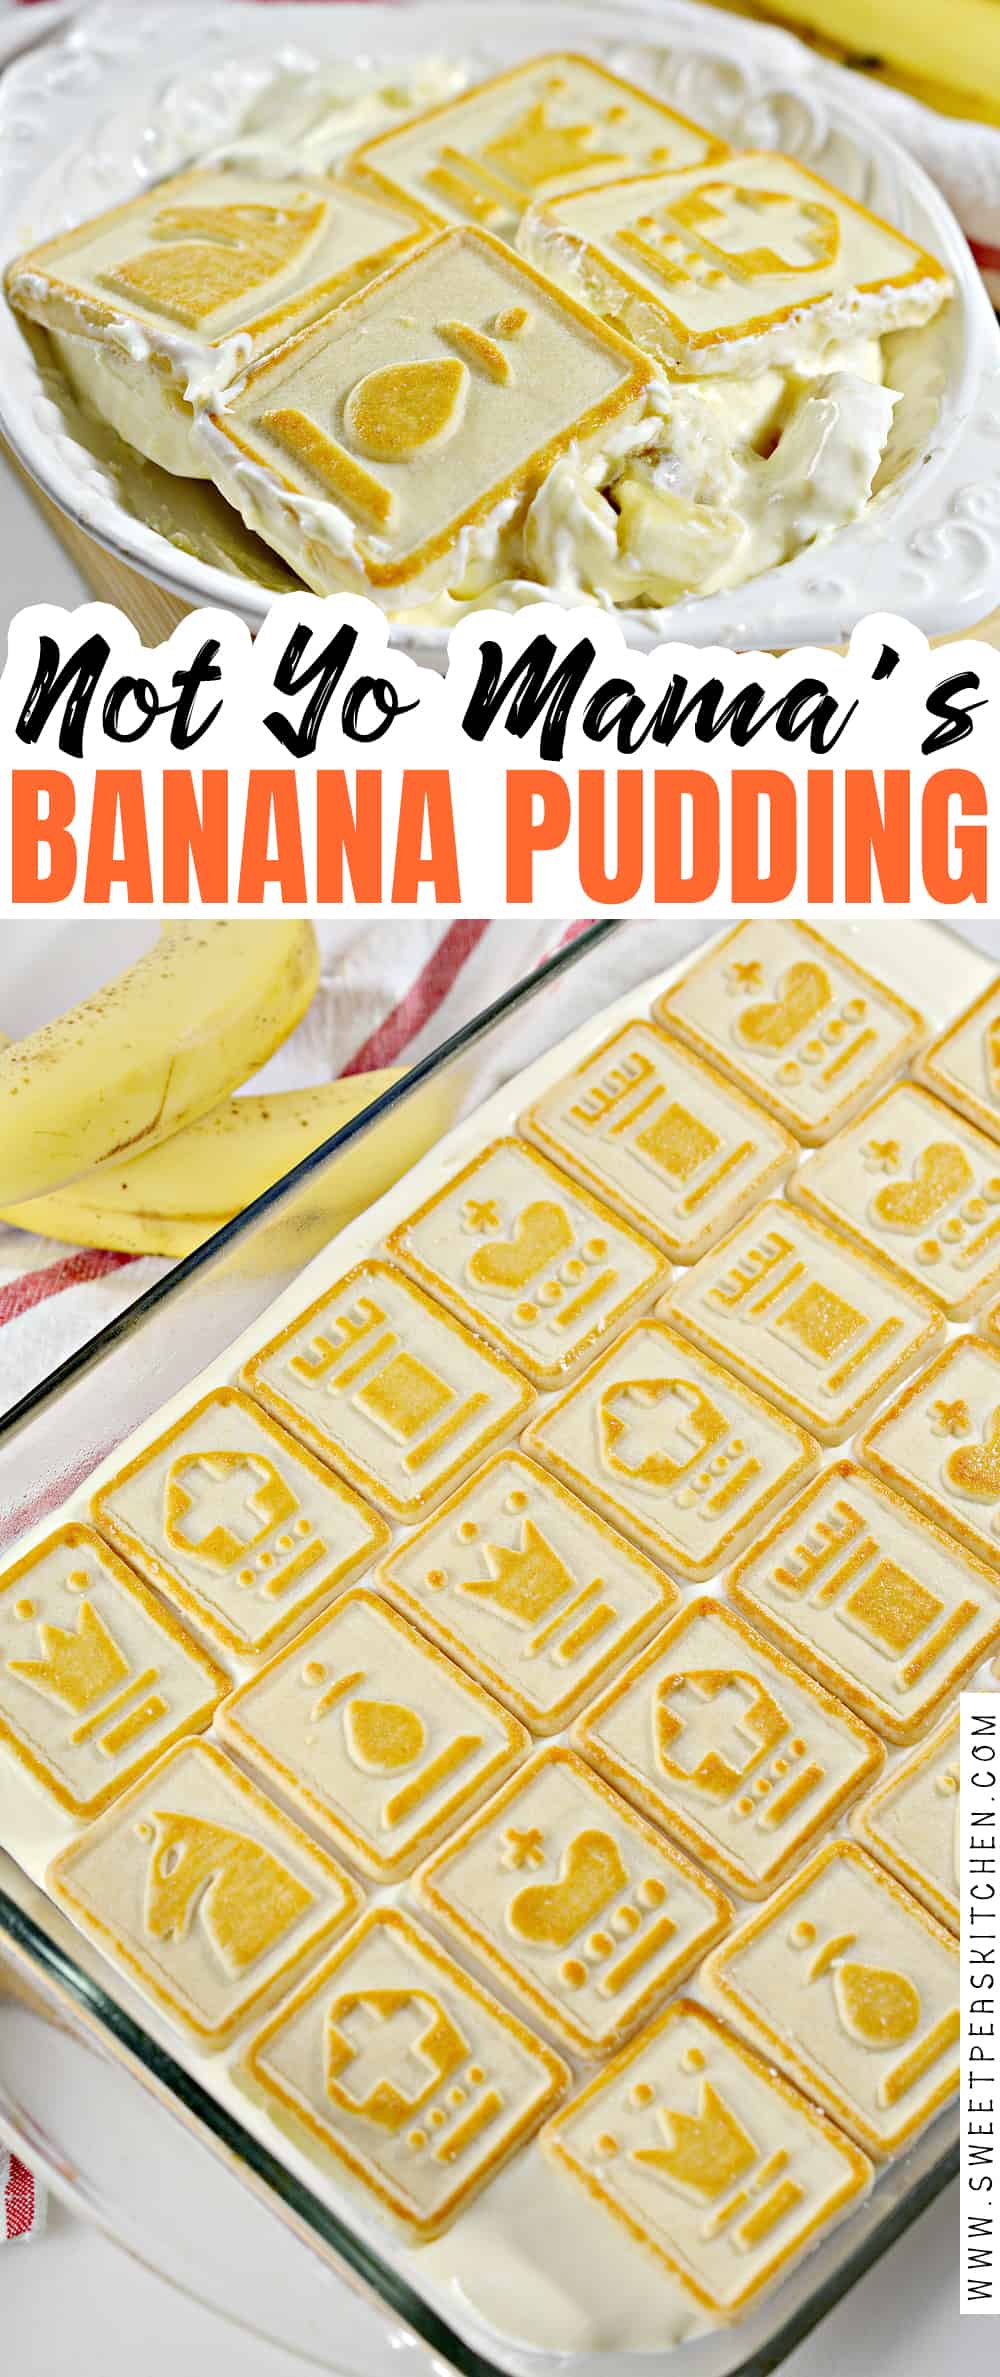 not yo mama's banana pudding on pinterest